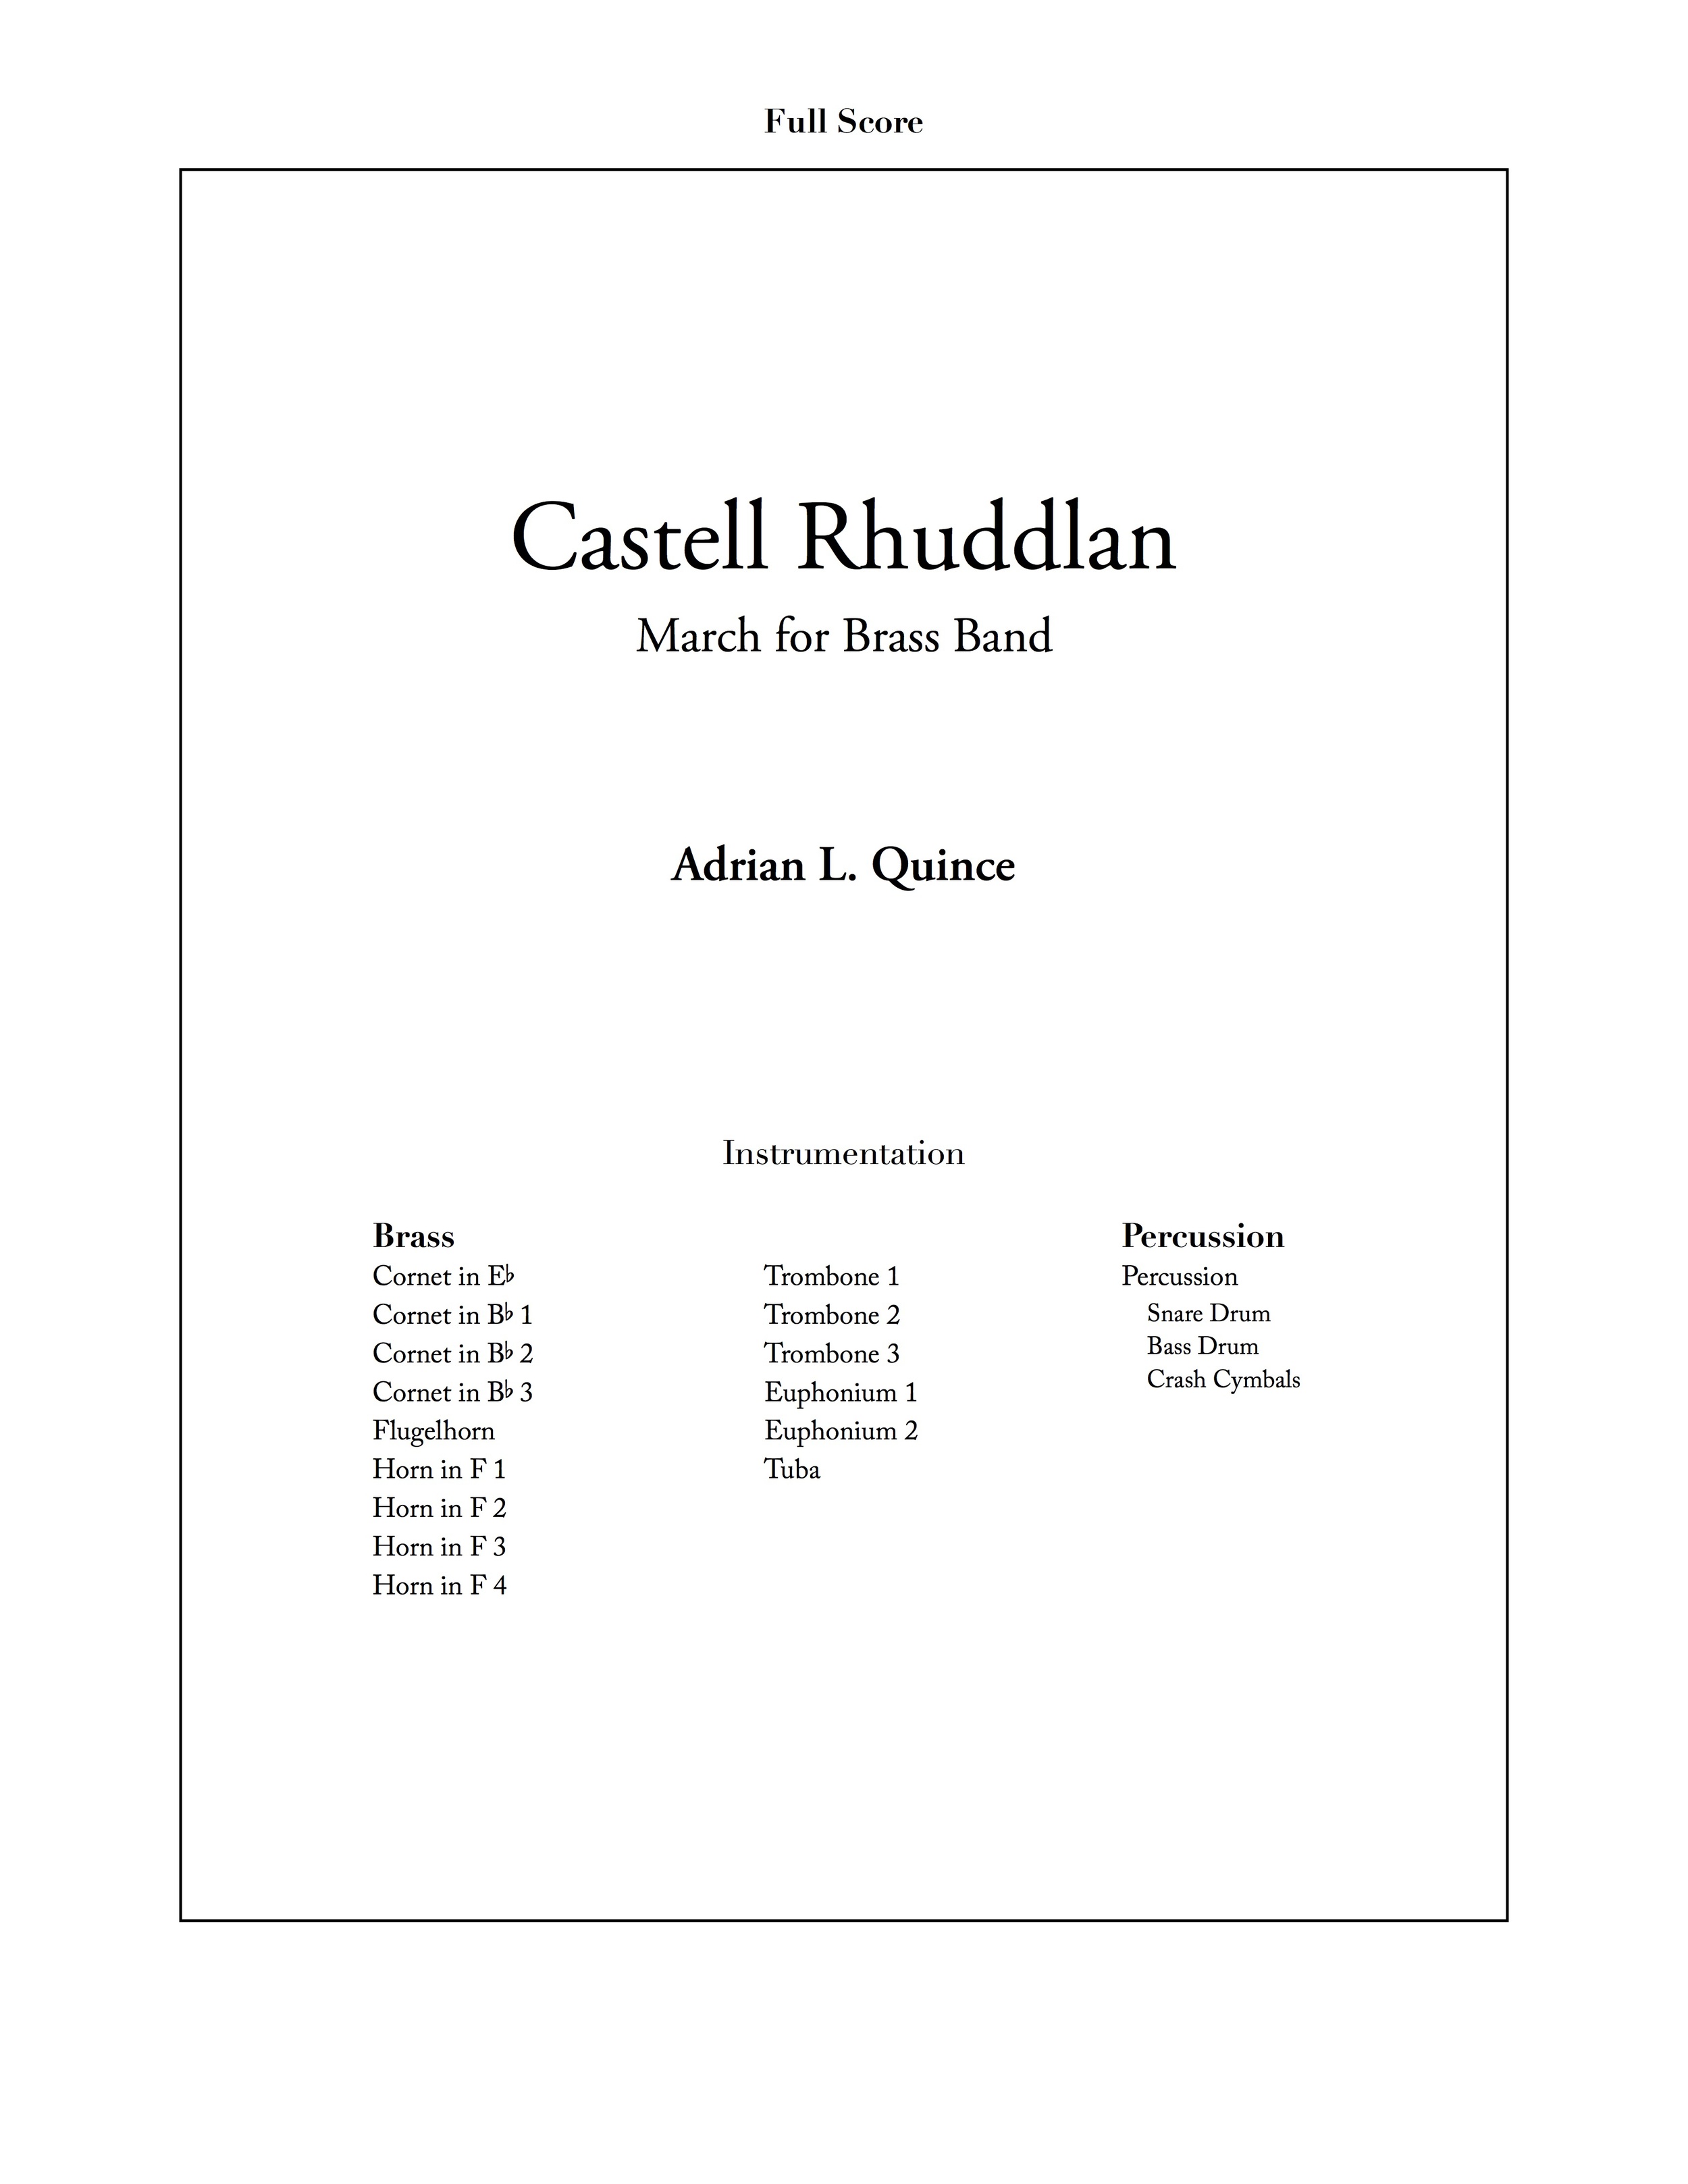 Castell Rhuddlan 3.jpg